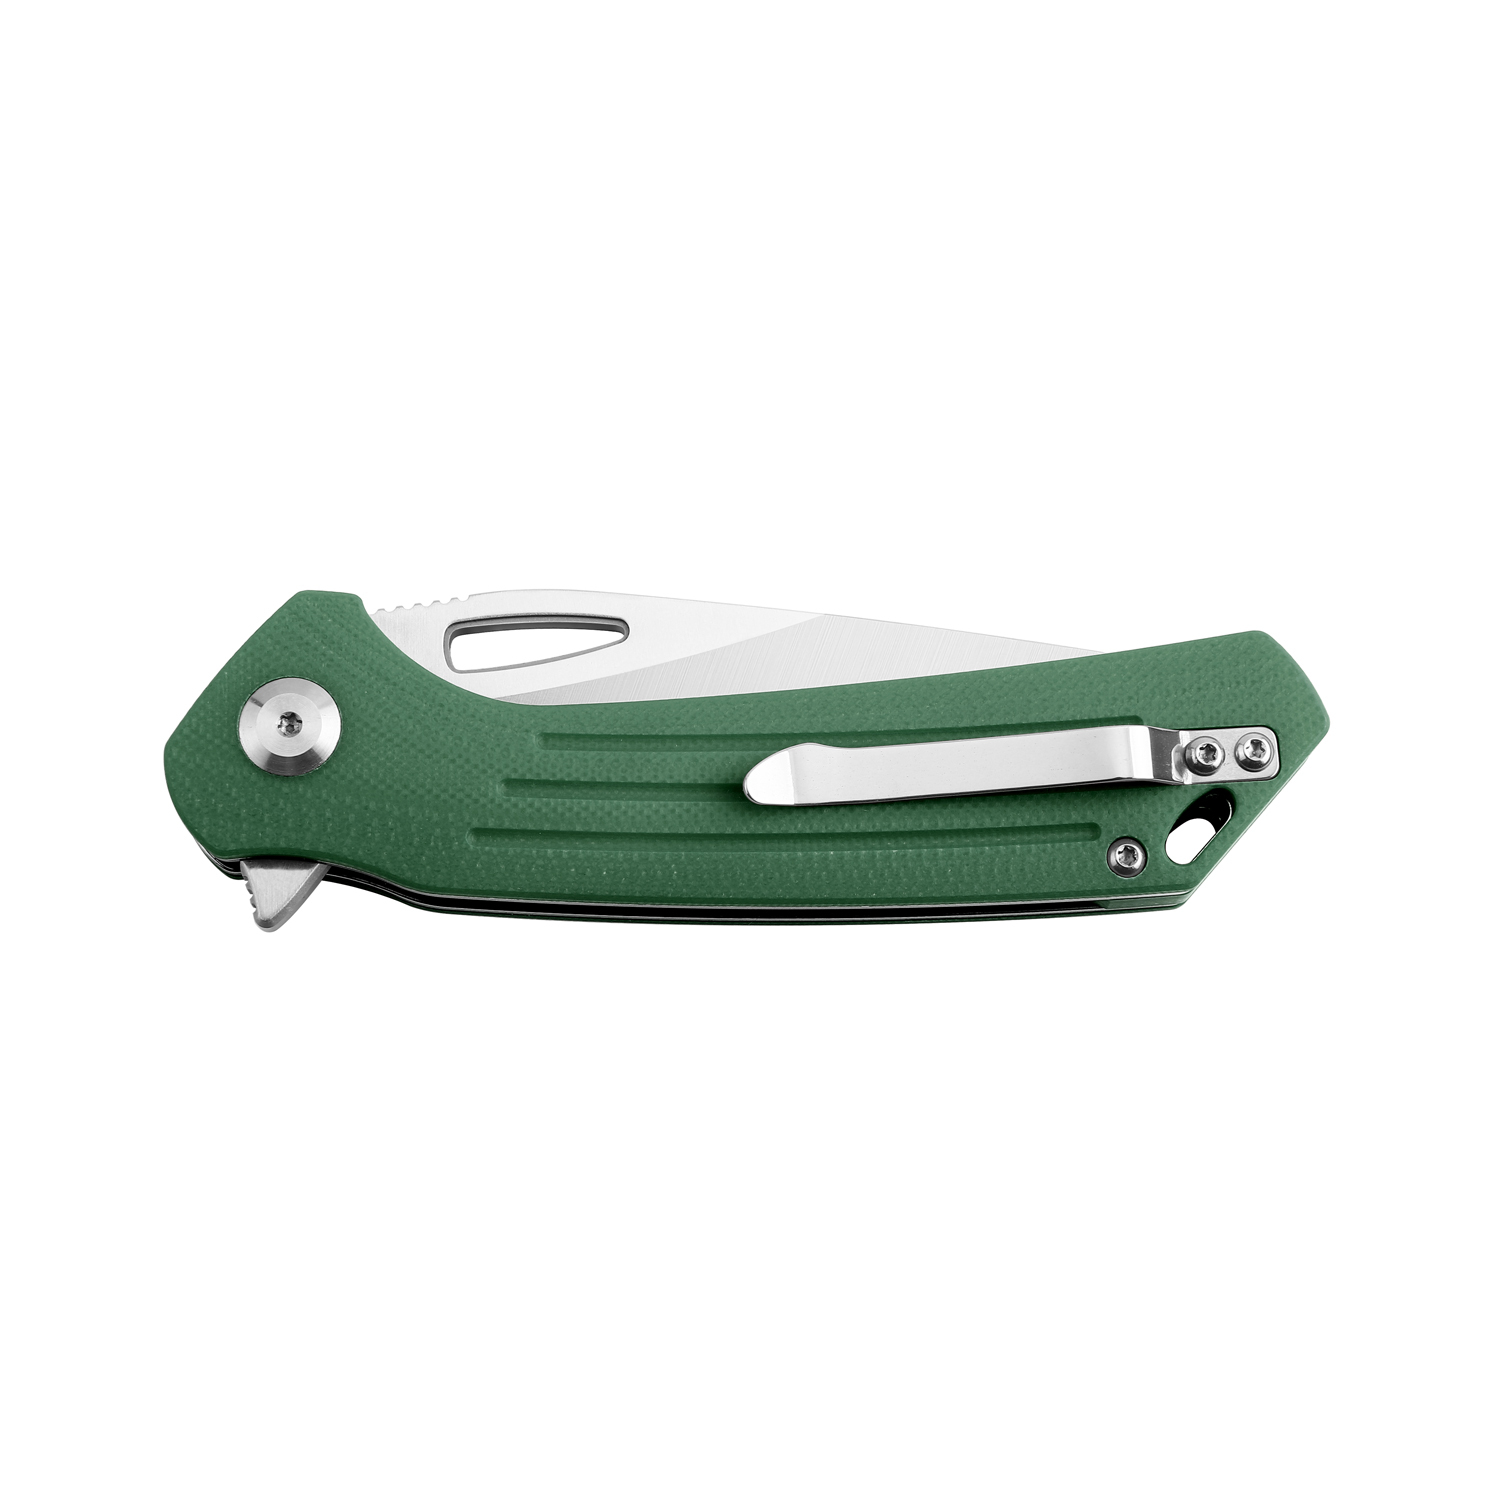 Складной нож Firebird FH921-GB, сталь D2, рукоять G10 зеленая - фото 6